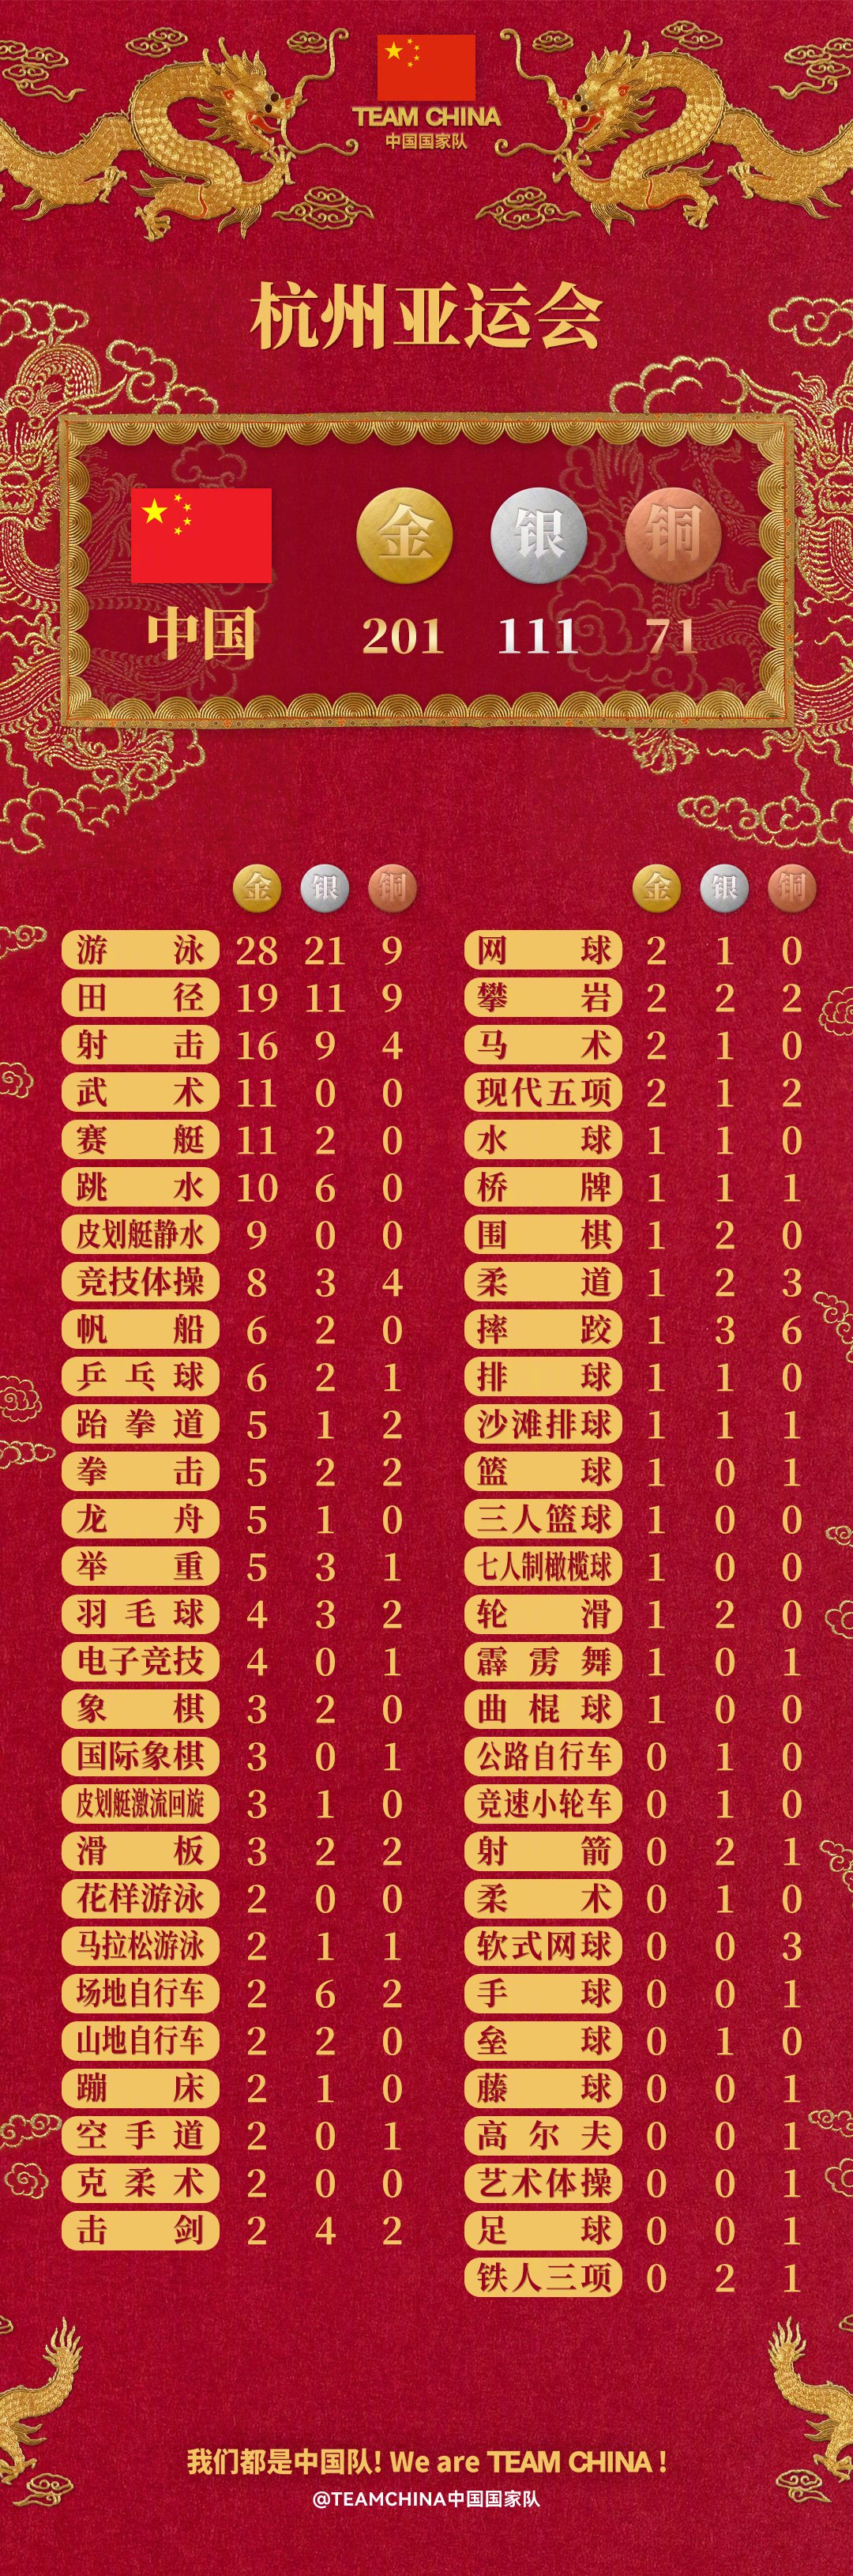 赛事收官！中国队位列奖牌榜第三_长江云 - 湖北网络广播电视台官方网站